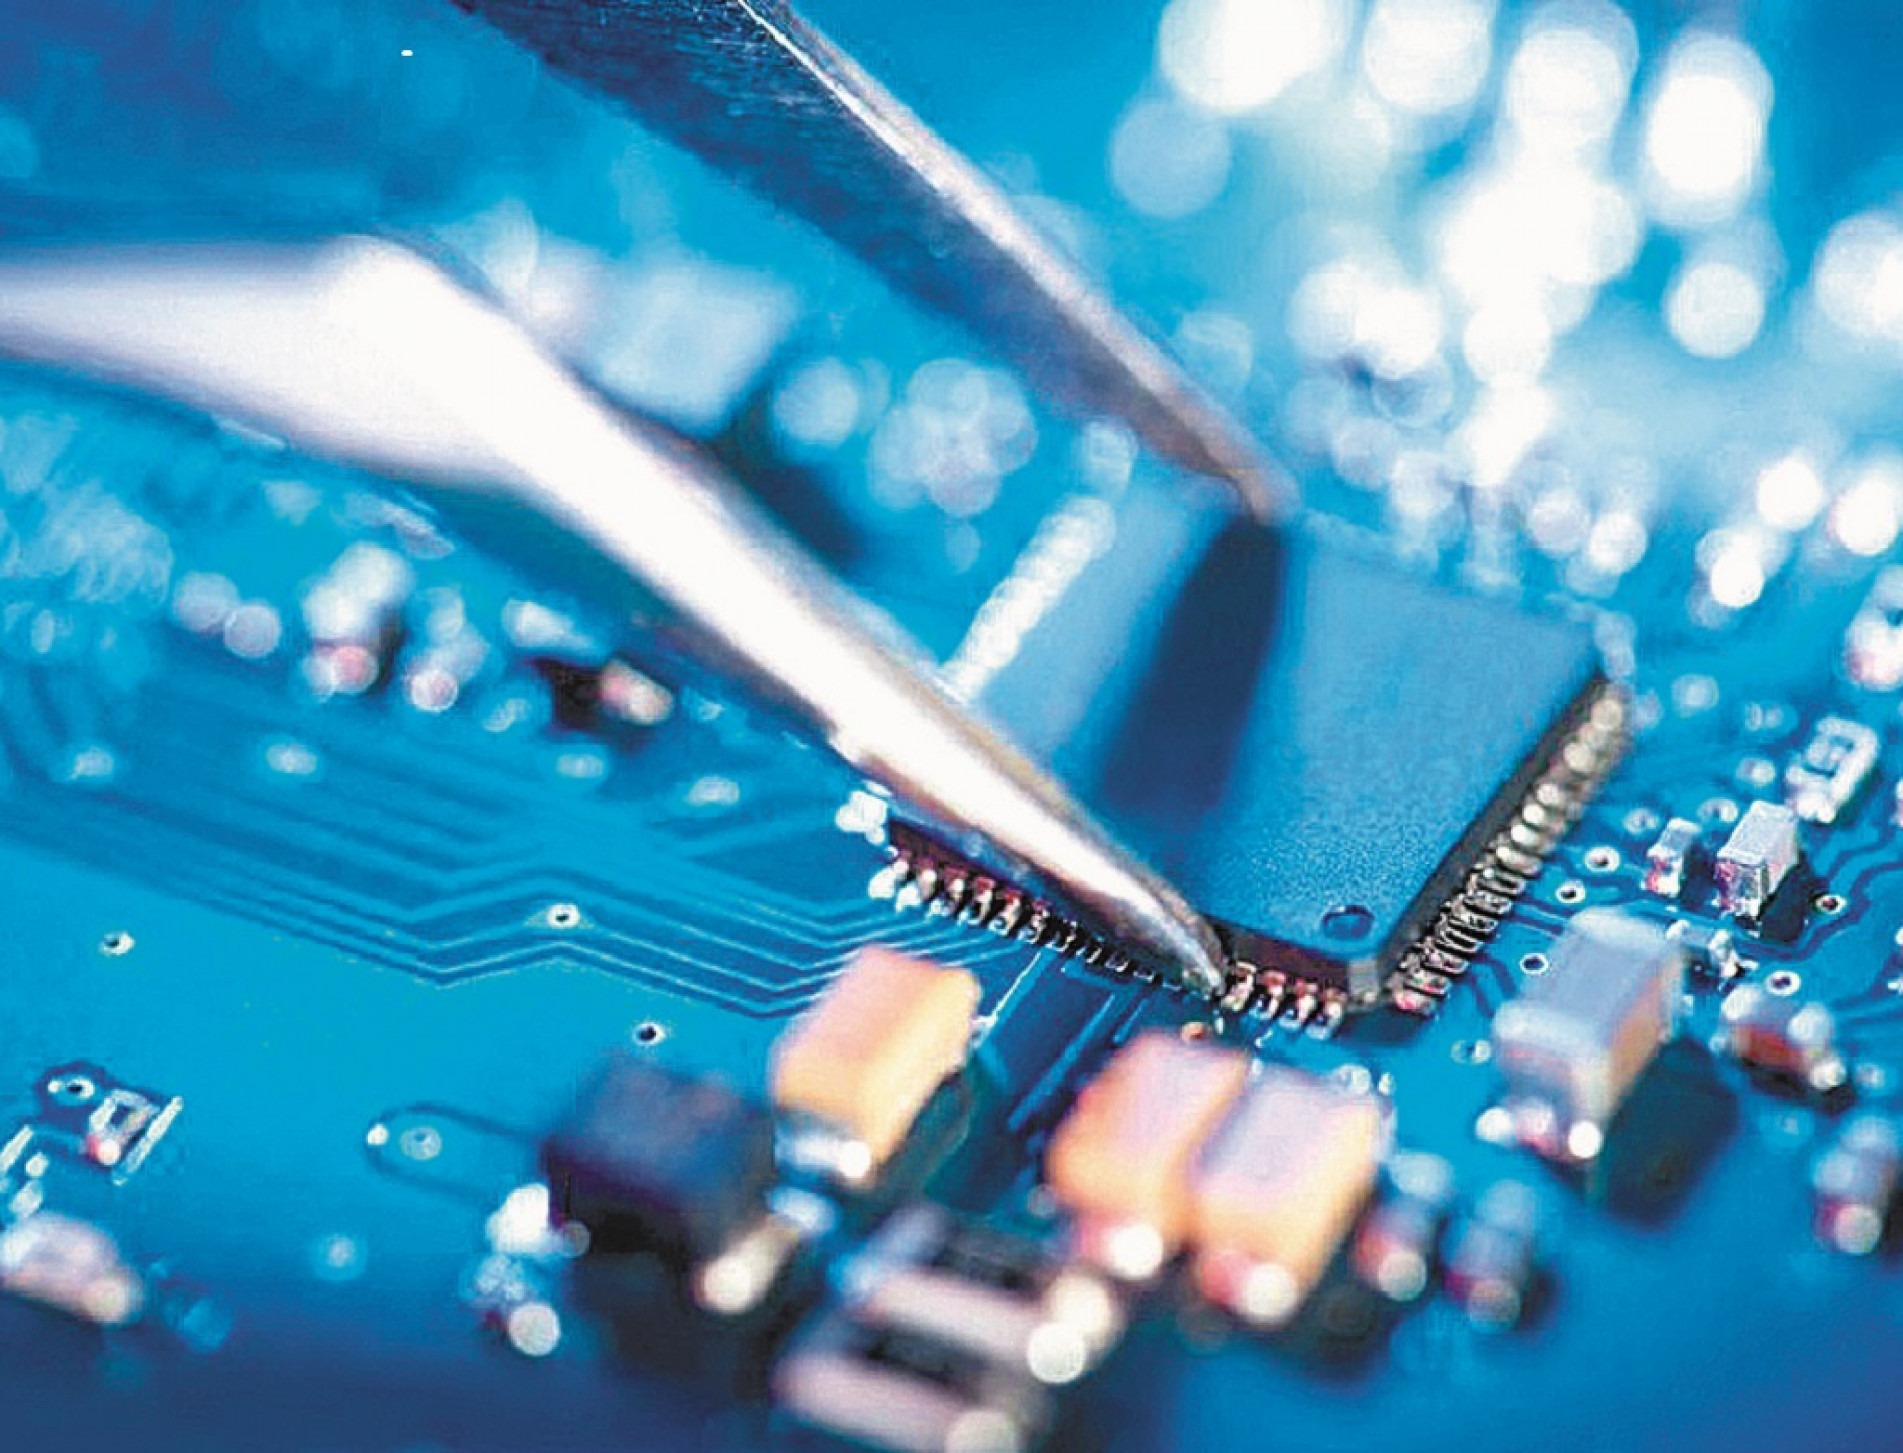 Os semicondutores são componentes fundamentais para a fabricação de veículos